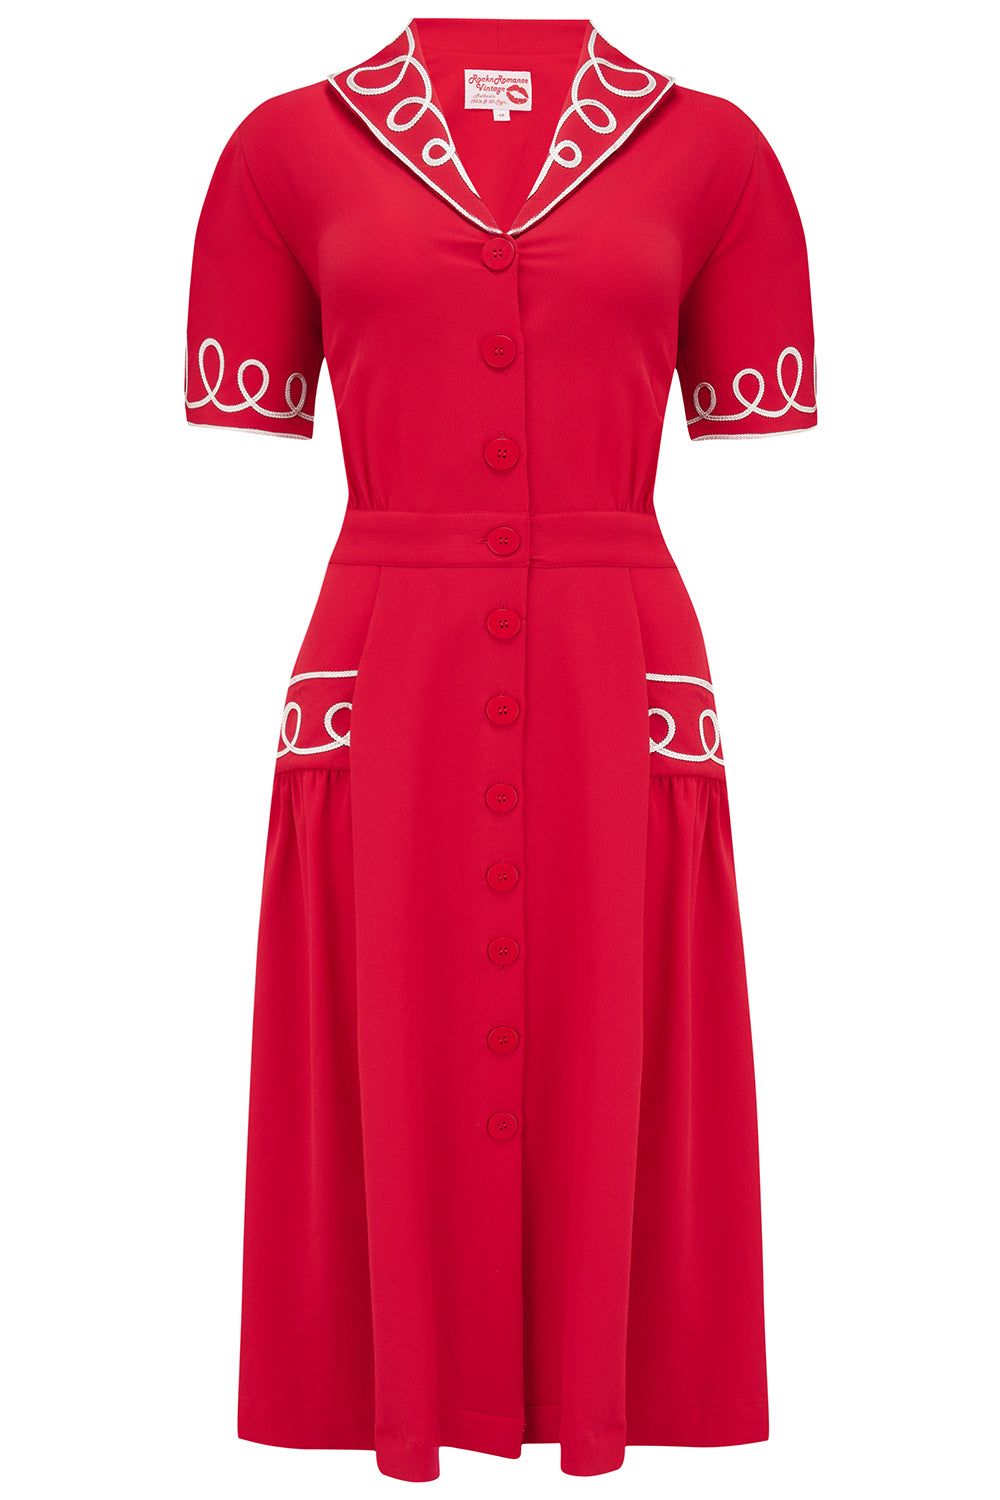 Das Hemdblusenkleid „Loopy-Lou“ in Rot mit kontrastierendem RicRac, echter Vintage-Stil der 1950er Jahre